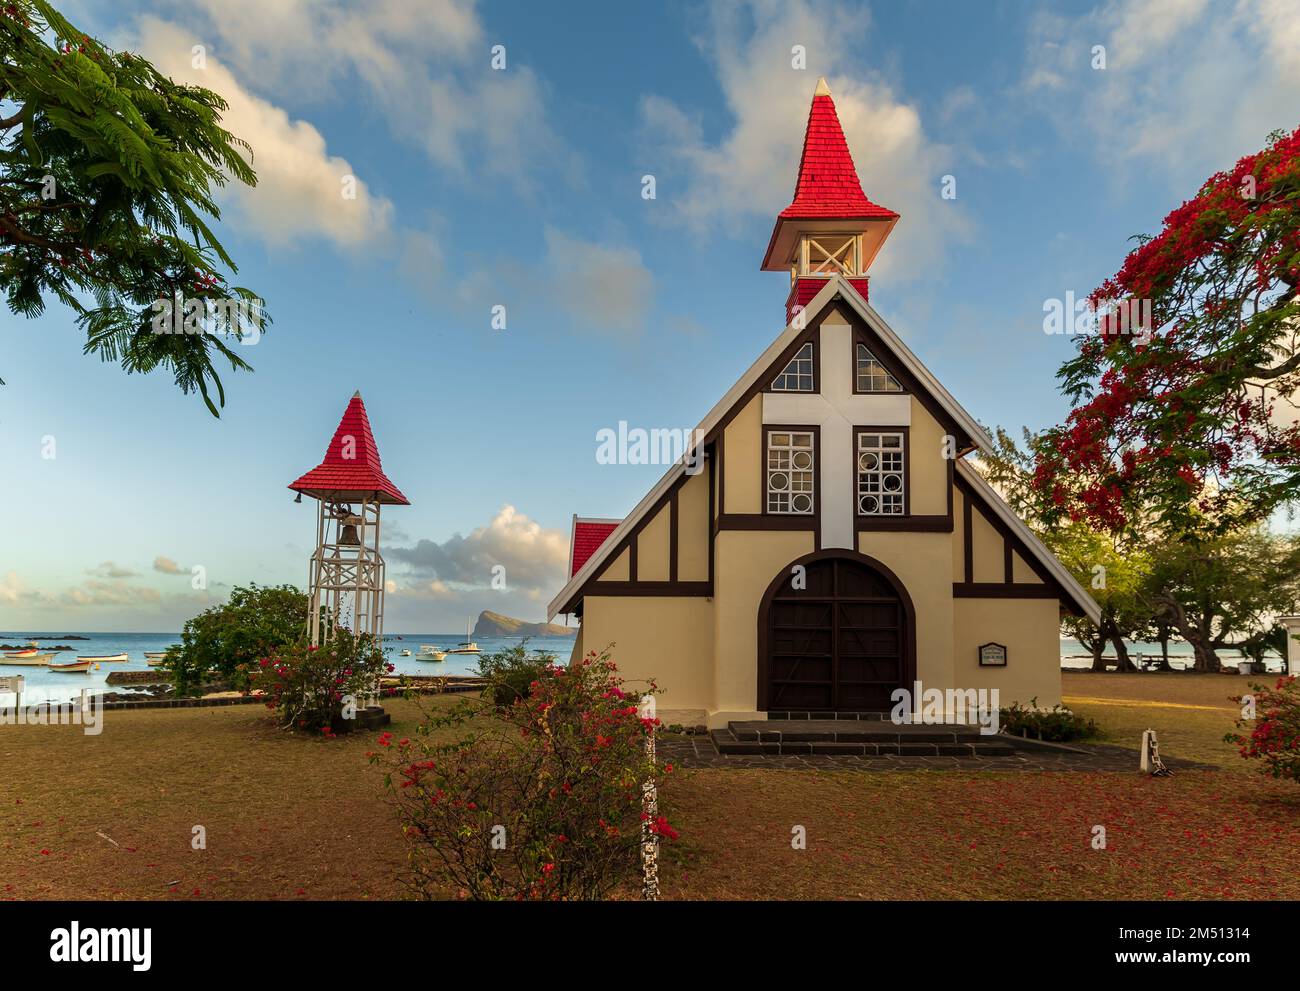 Die Kapelle mit dem roten Dach, Notre Dame Auxiliatrice, Cap Malheureux im Norden von Mauritius. Berühmter historischer Ort. Hier landeten die englischen Kolonisatoren Stockfoto